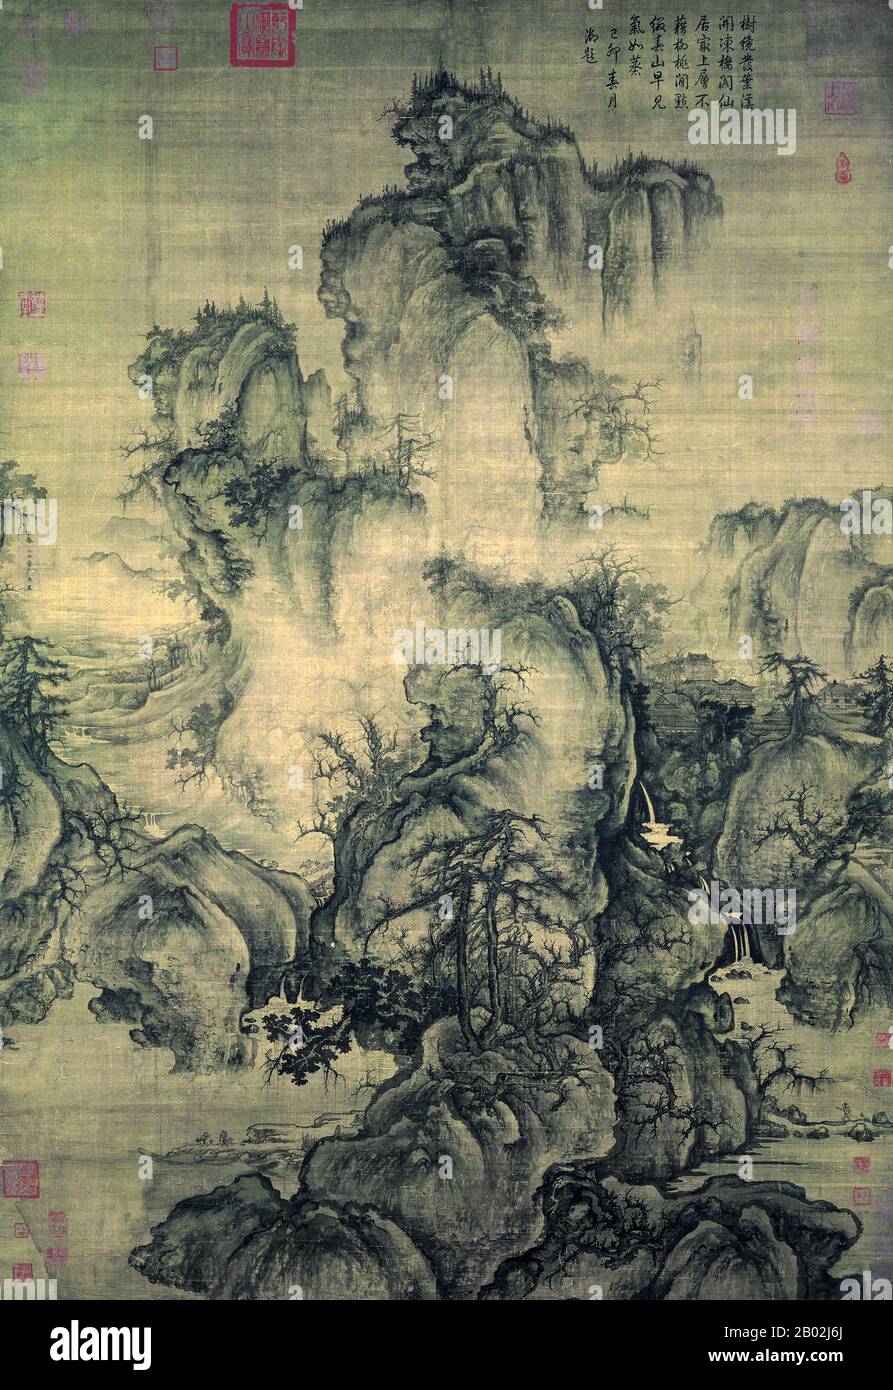 Early Spring è un dipinto a spirale sospeso dall'artista Guo Xi. Completato nel 1072 d.C., è una delle più famose opere d'arte cinese del periodo della Dinastia Song. Il lavoro dimostra le sue tecniche innovative per produrre prospettive multiple che egli ha chiamato 'l'angolo della totalità'. Il poema nell'angolo in alto a destra fu aggiunto nel 1759 dall'imperatore Qianlong. Si legge: Cinese: 樹纔發葉溪開凍 / 樓閣仙居最上層 / 不藉柳桃閒點綴 / 春山早見氣如蒸 Pinyin: shù cái fā yè xī kāidòng / lóugé xiānjū zuì shàngcéng / bù jiè liǔ táo jiàn diǎnzhuì / chūnshān zǎo jiàn qì rú zhēng gli alberi stanno solo cominciando a germogliare foglie; Foto Stock